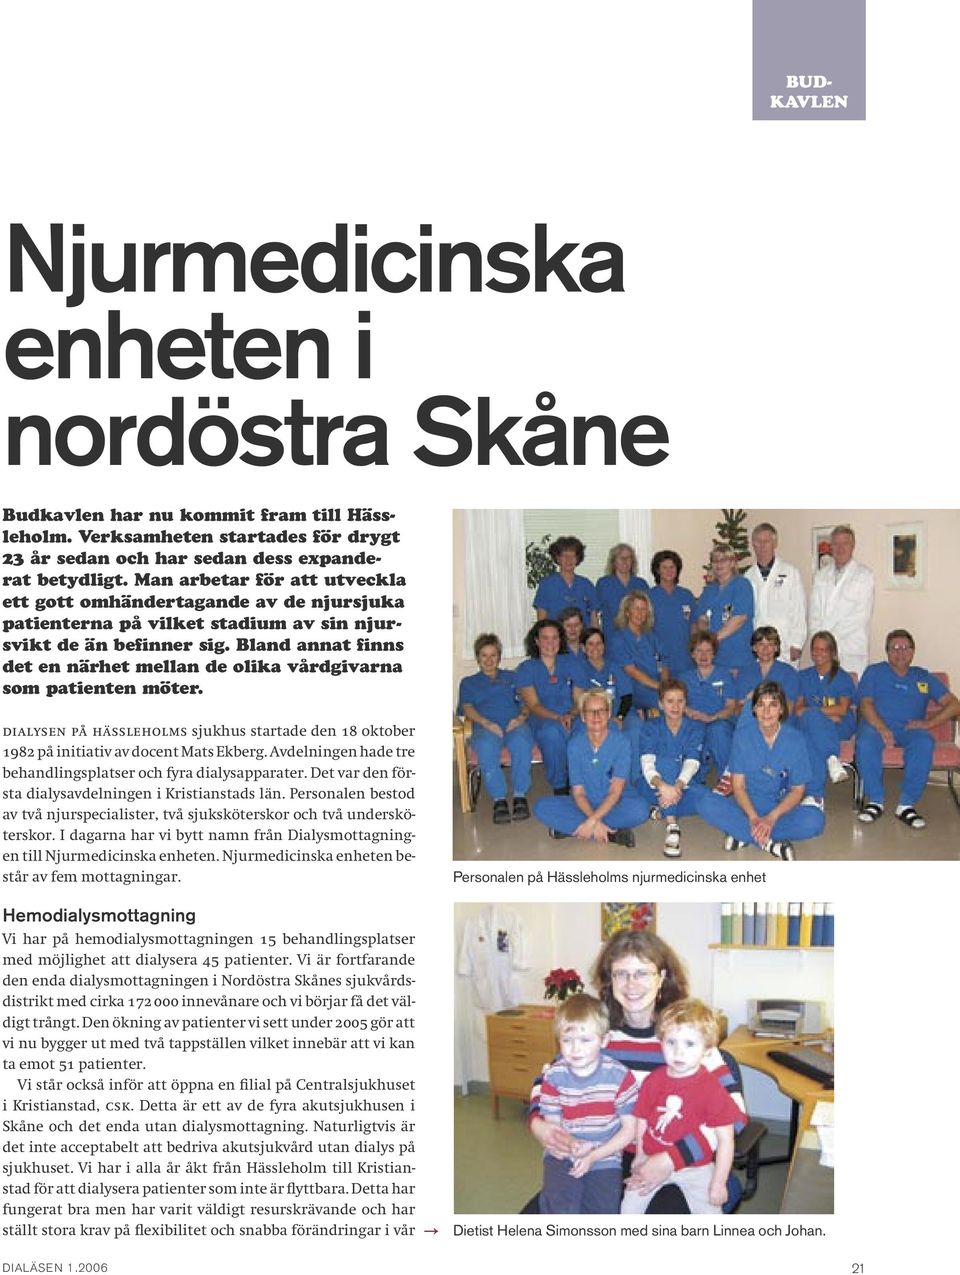 Bland annat finns det en närhet mellan de olika vårdgivarna som patienten möter. Dialysen på Hässleholms sjukhus startade den 18 oktober 1982 på initiativ av docent Mats Ekberg.